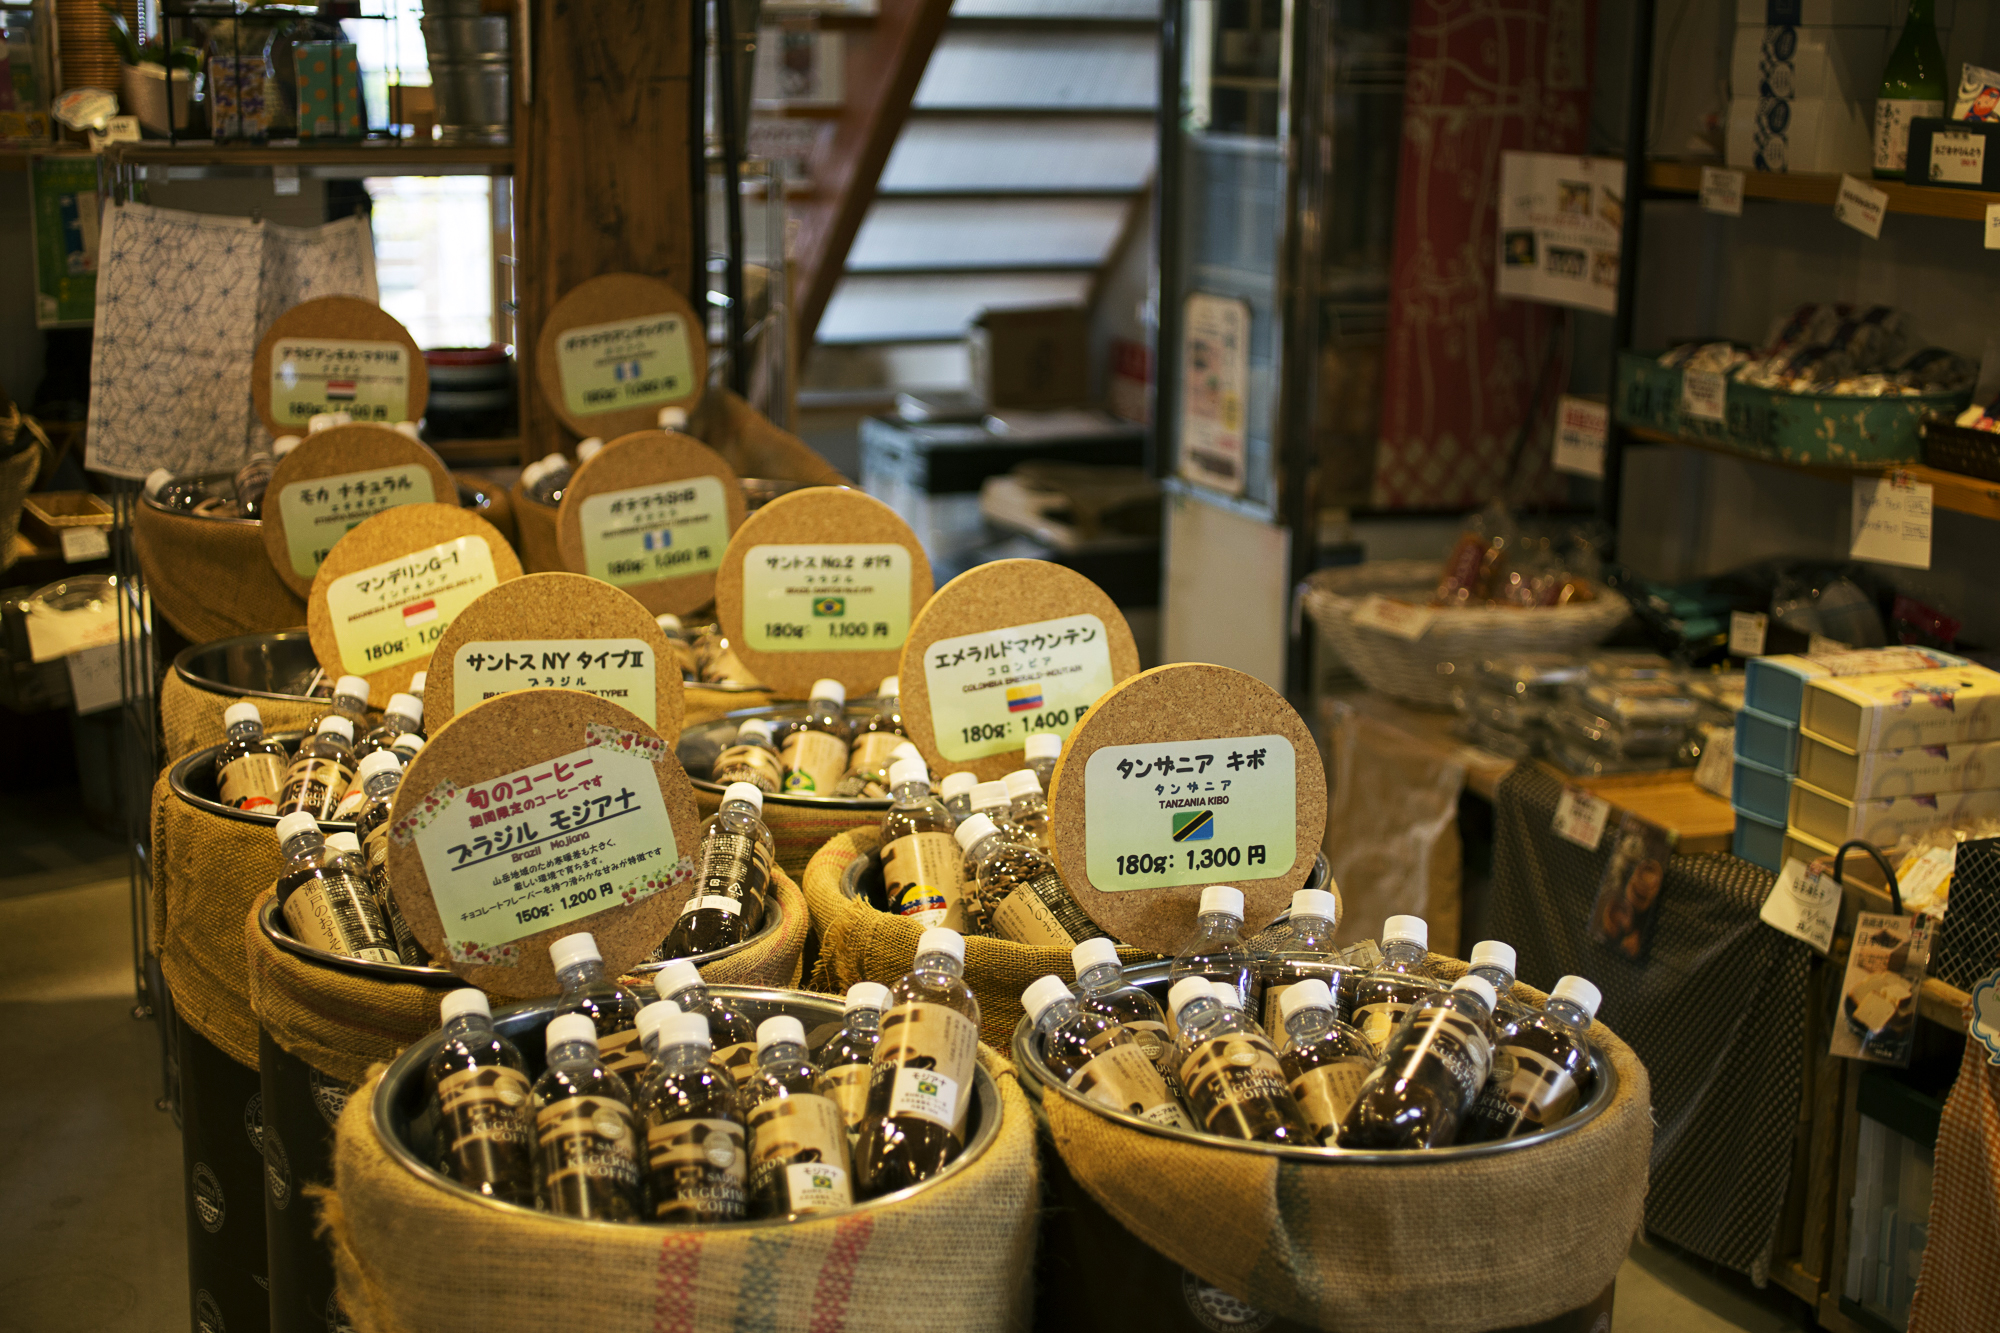 コーヒー豆は、鮮度が保てる炭酸水用のペットボトルに入れて販売。